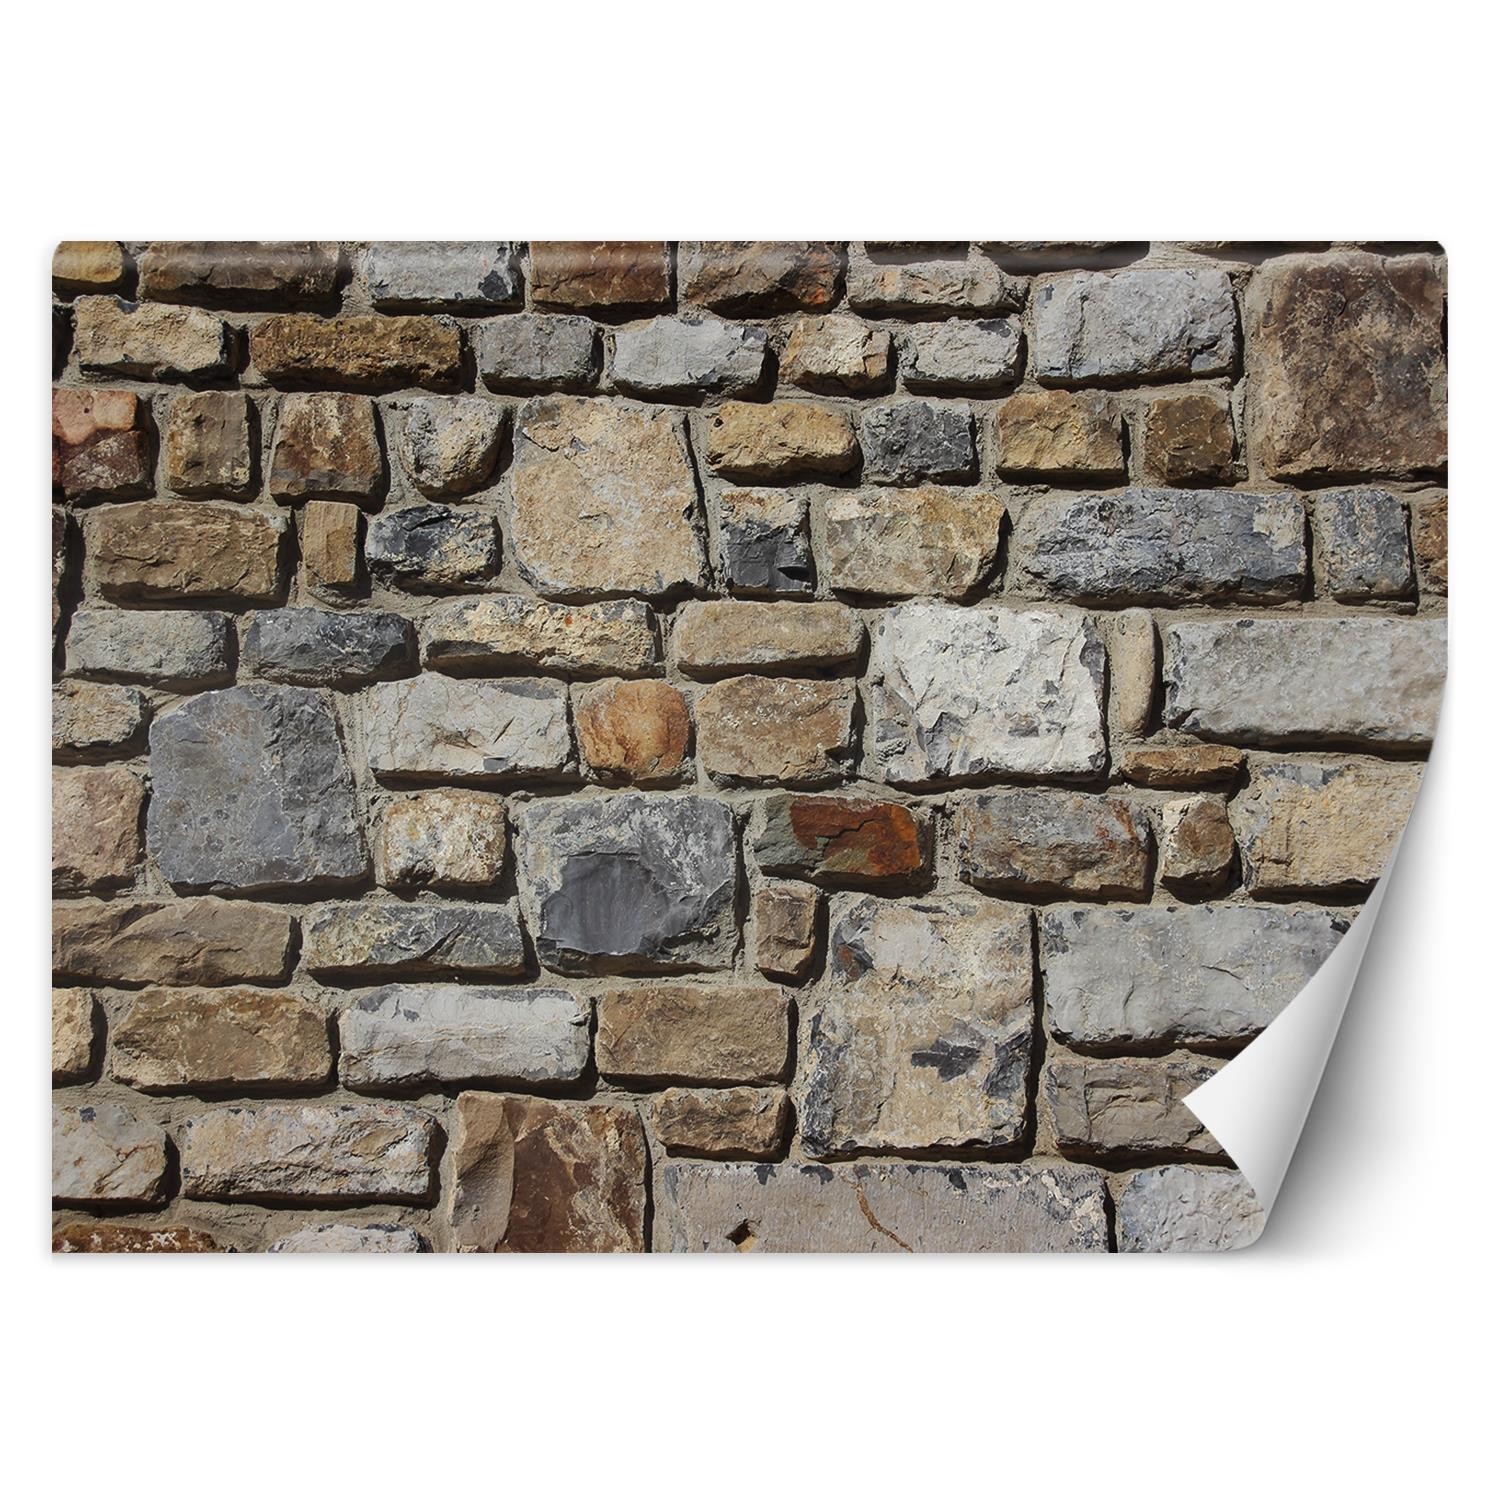 Trend24 – Behang – Stenen Op De Muur – Behangpapier – Behang Woonkamer – Fotobehang – 400×280 cm – Incl. behanglijm